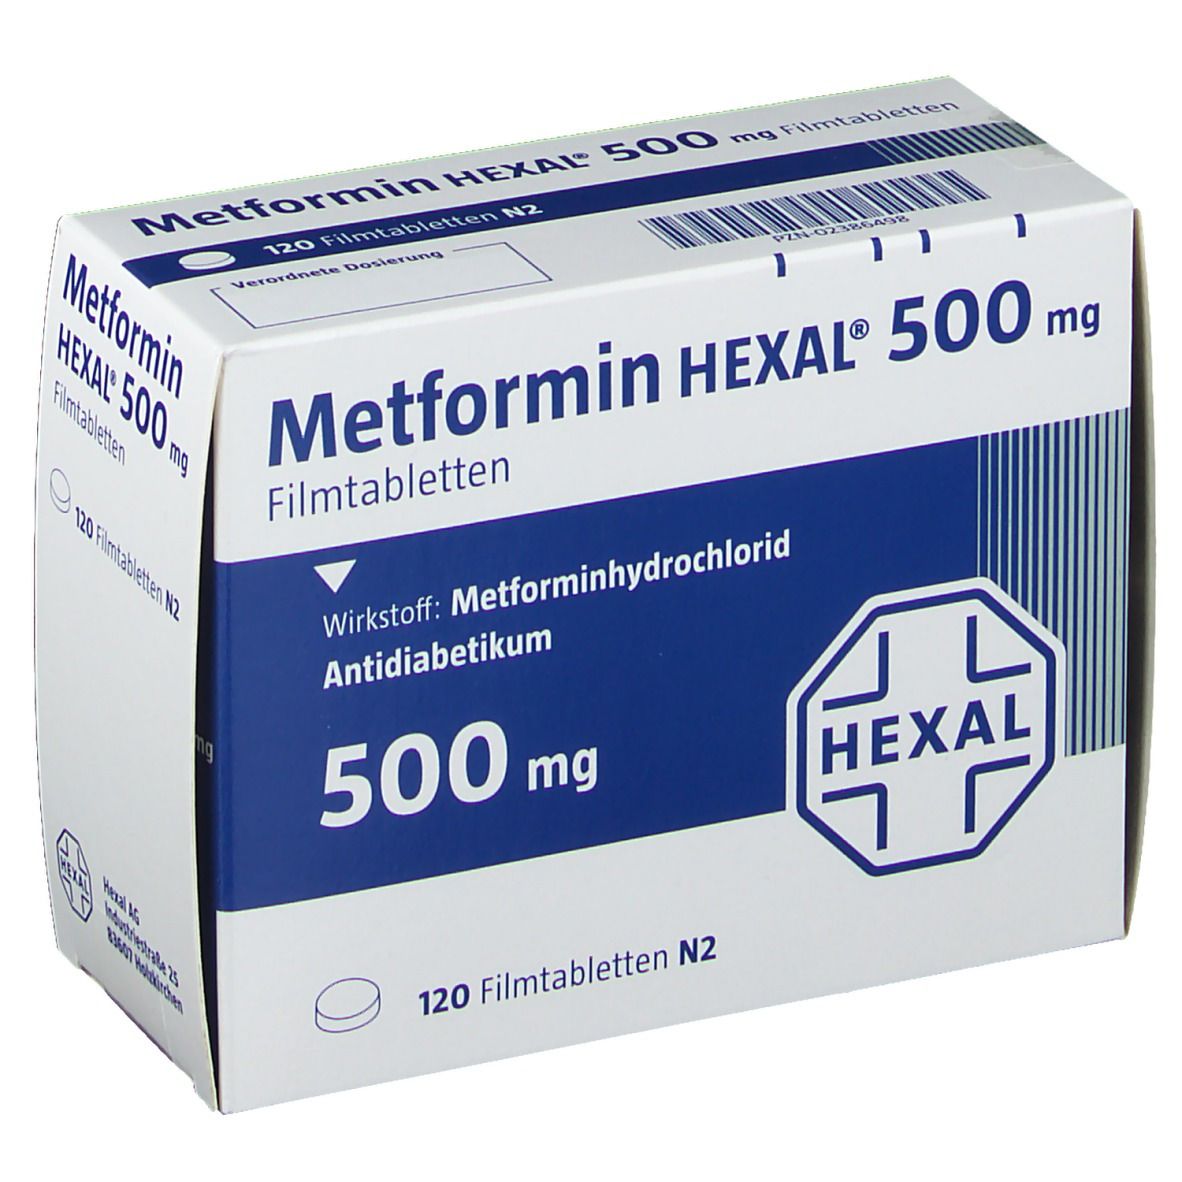 Metformin Hexal 500